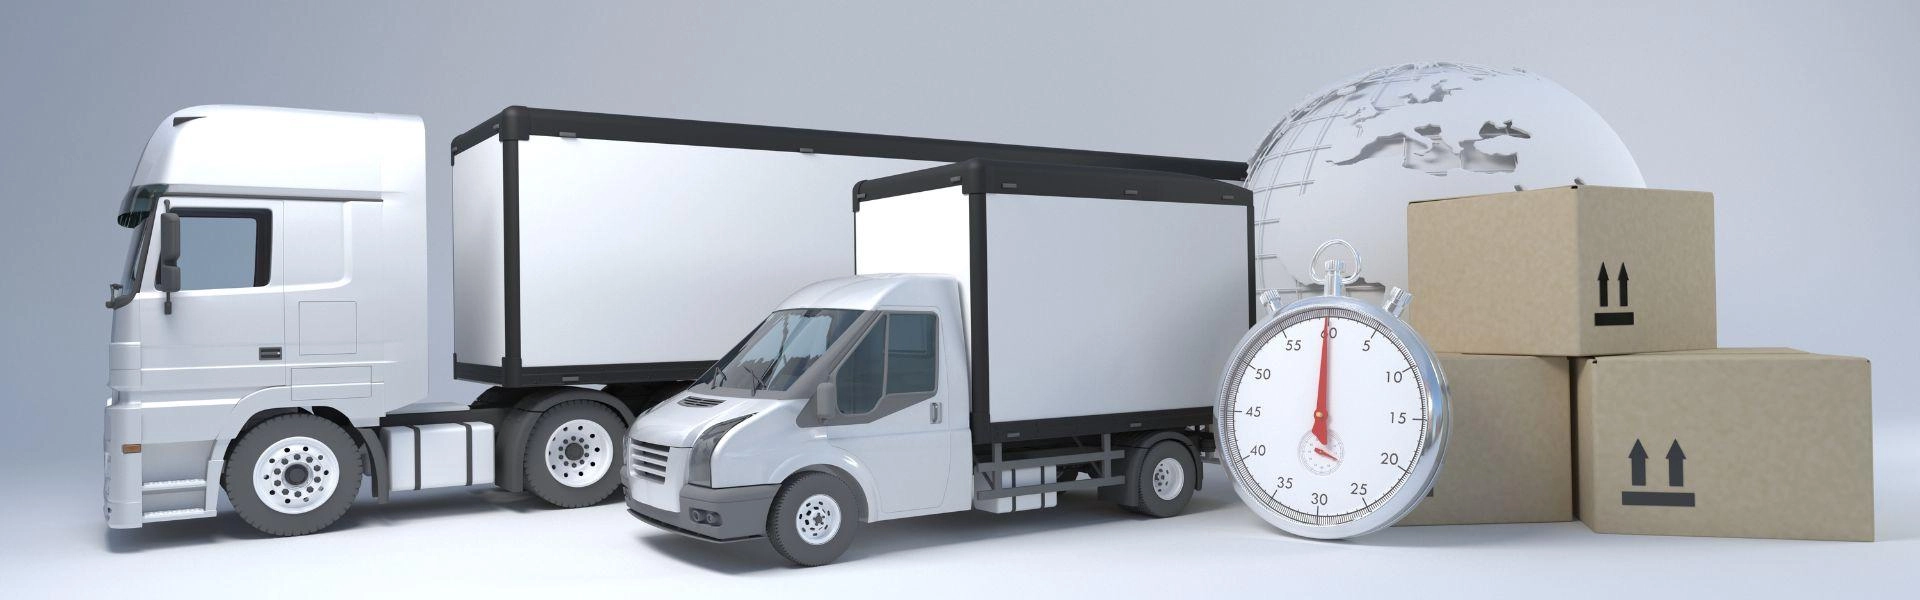 Conceito 3D de caminhão e um carro de entrega de mercadorias, junto com caixas de papelão simulando entrega.